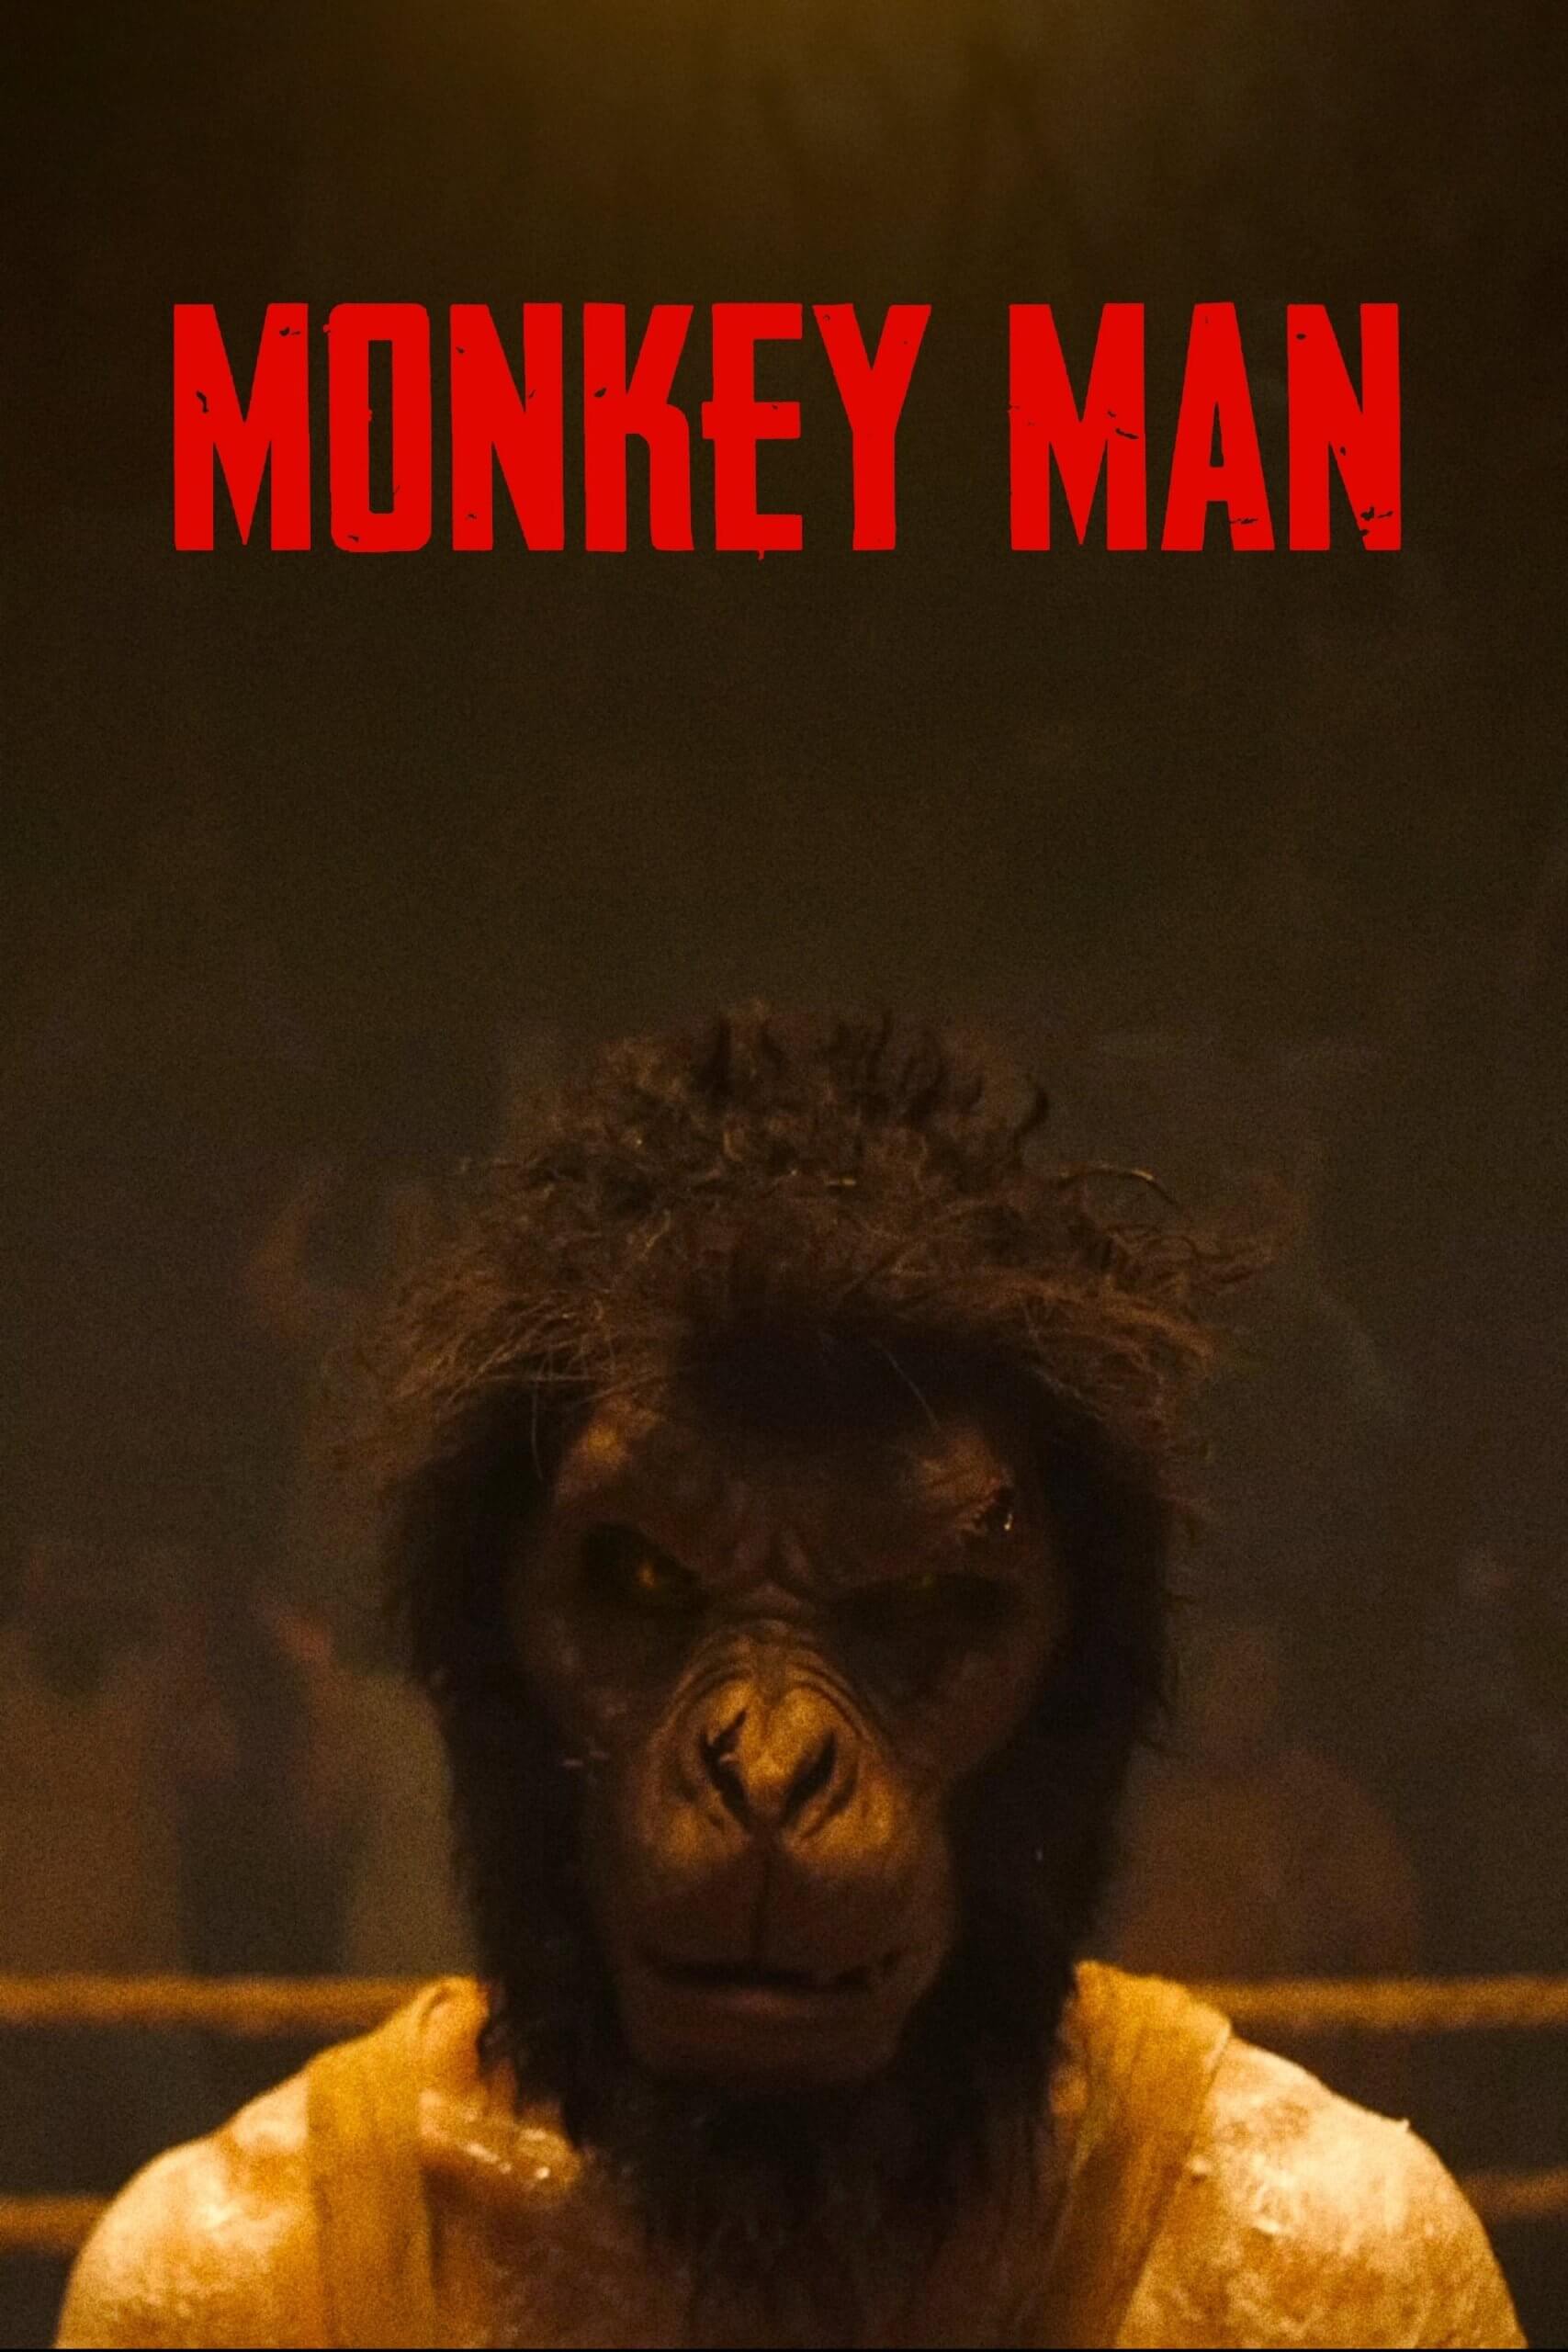 Monkeyman Poster